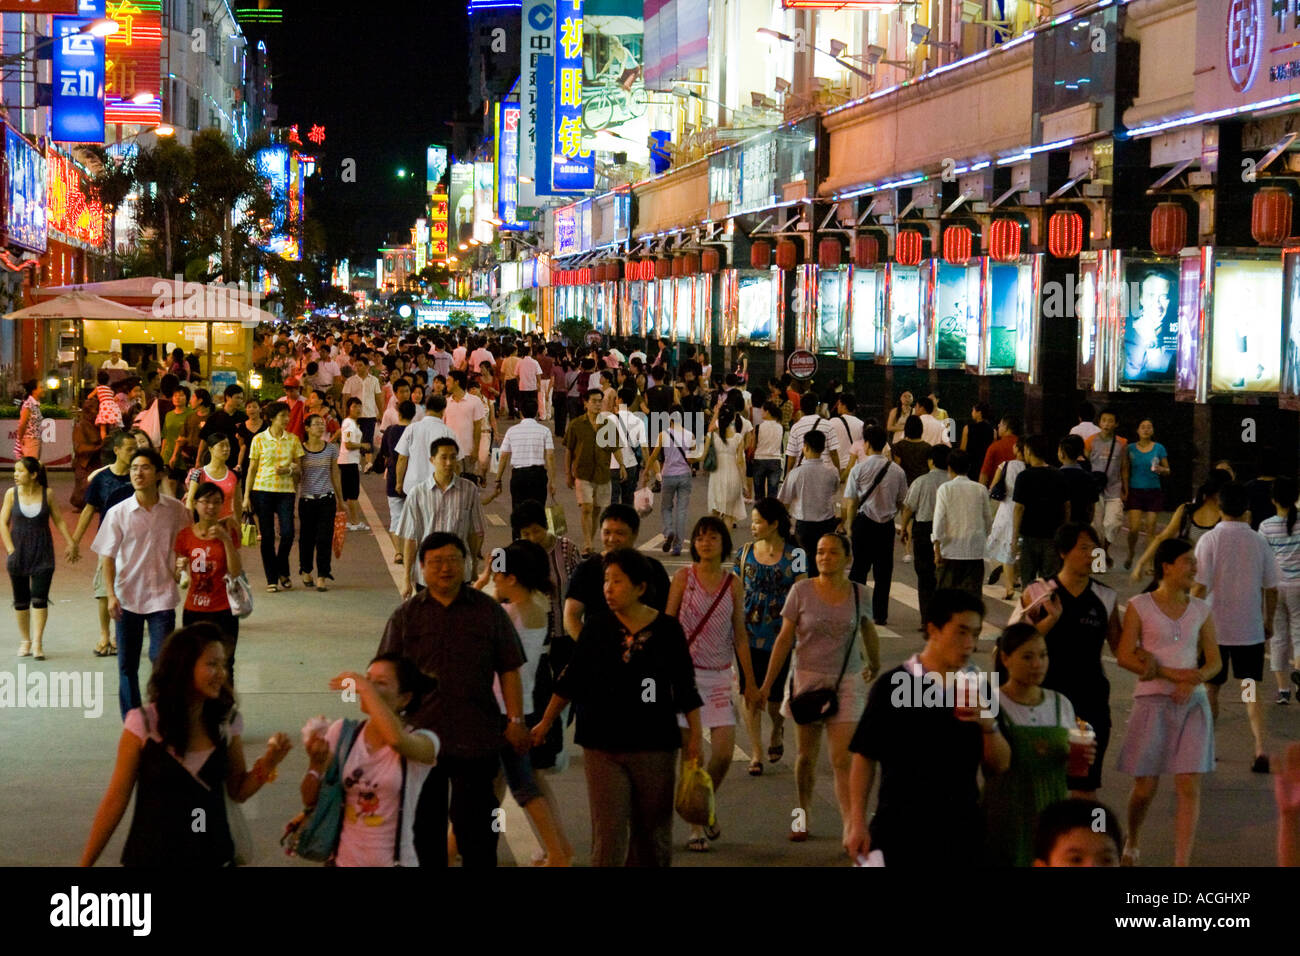 Los compradores chinos en una concurrida calle comercial peatonal de Xiamen, China Foto de stock